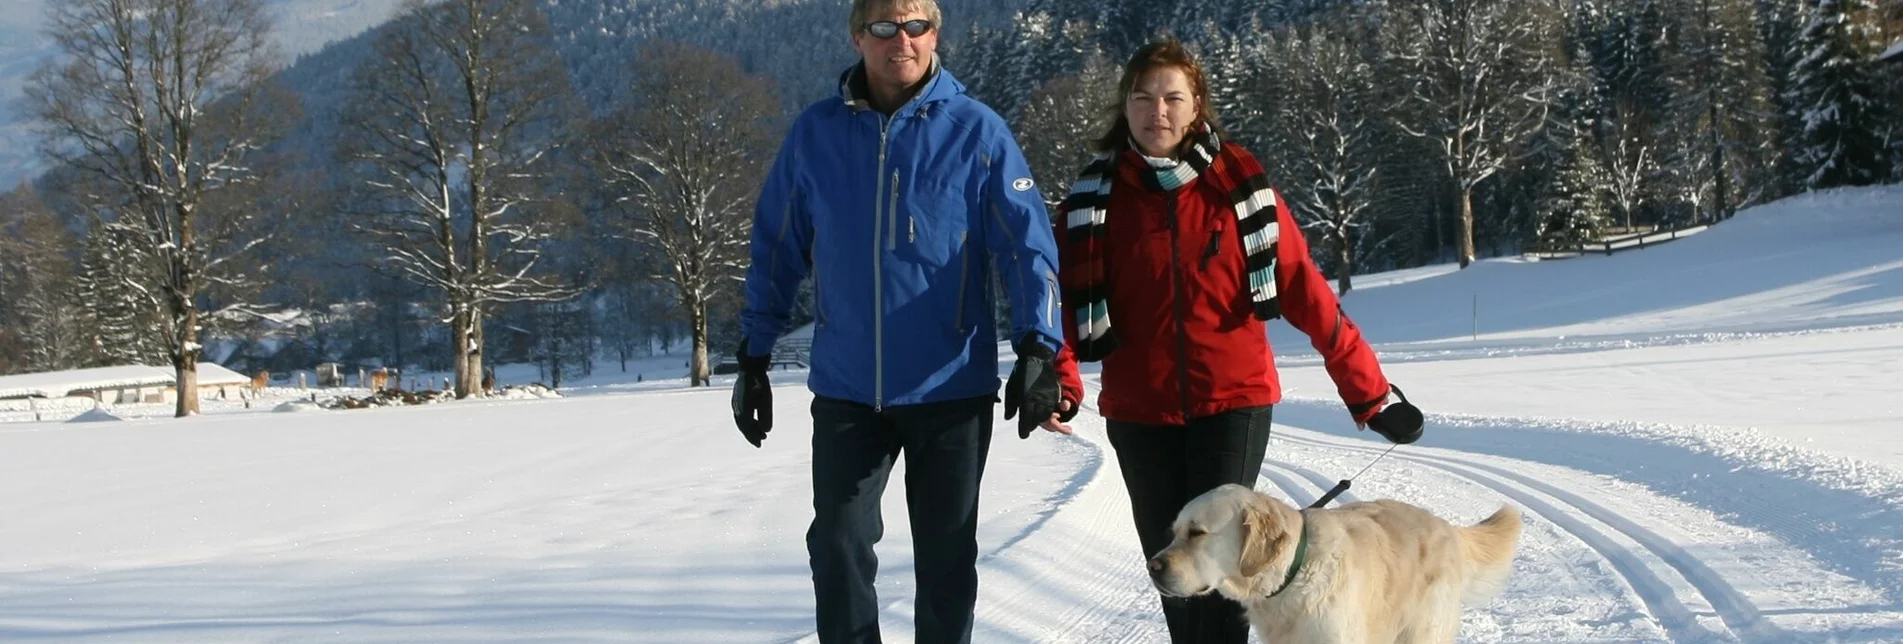 Winter Hiking Larch Trail - Touren-Impression #1 | © Erlebnisregion Schladming-Dachstein